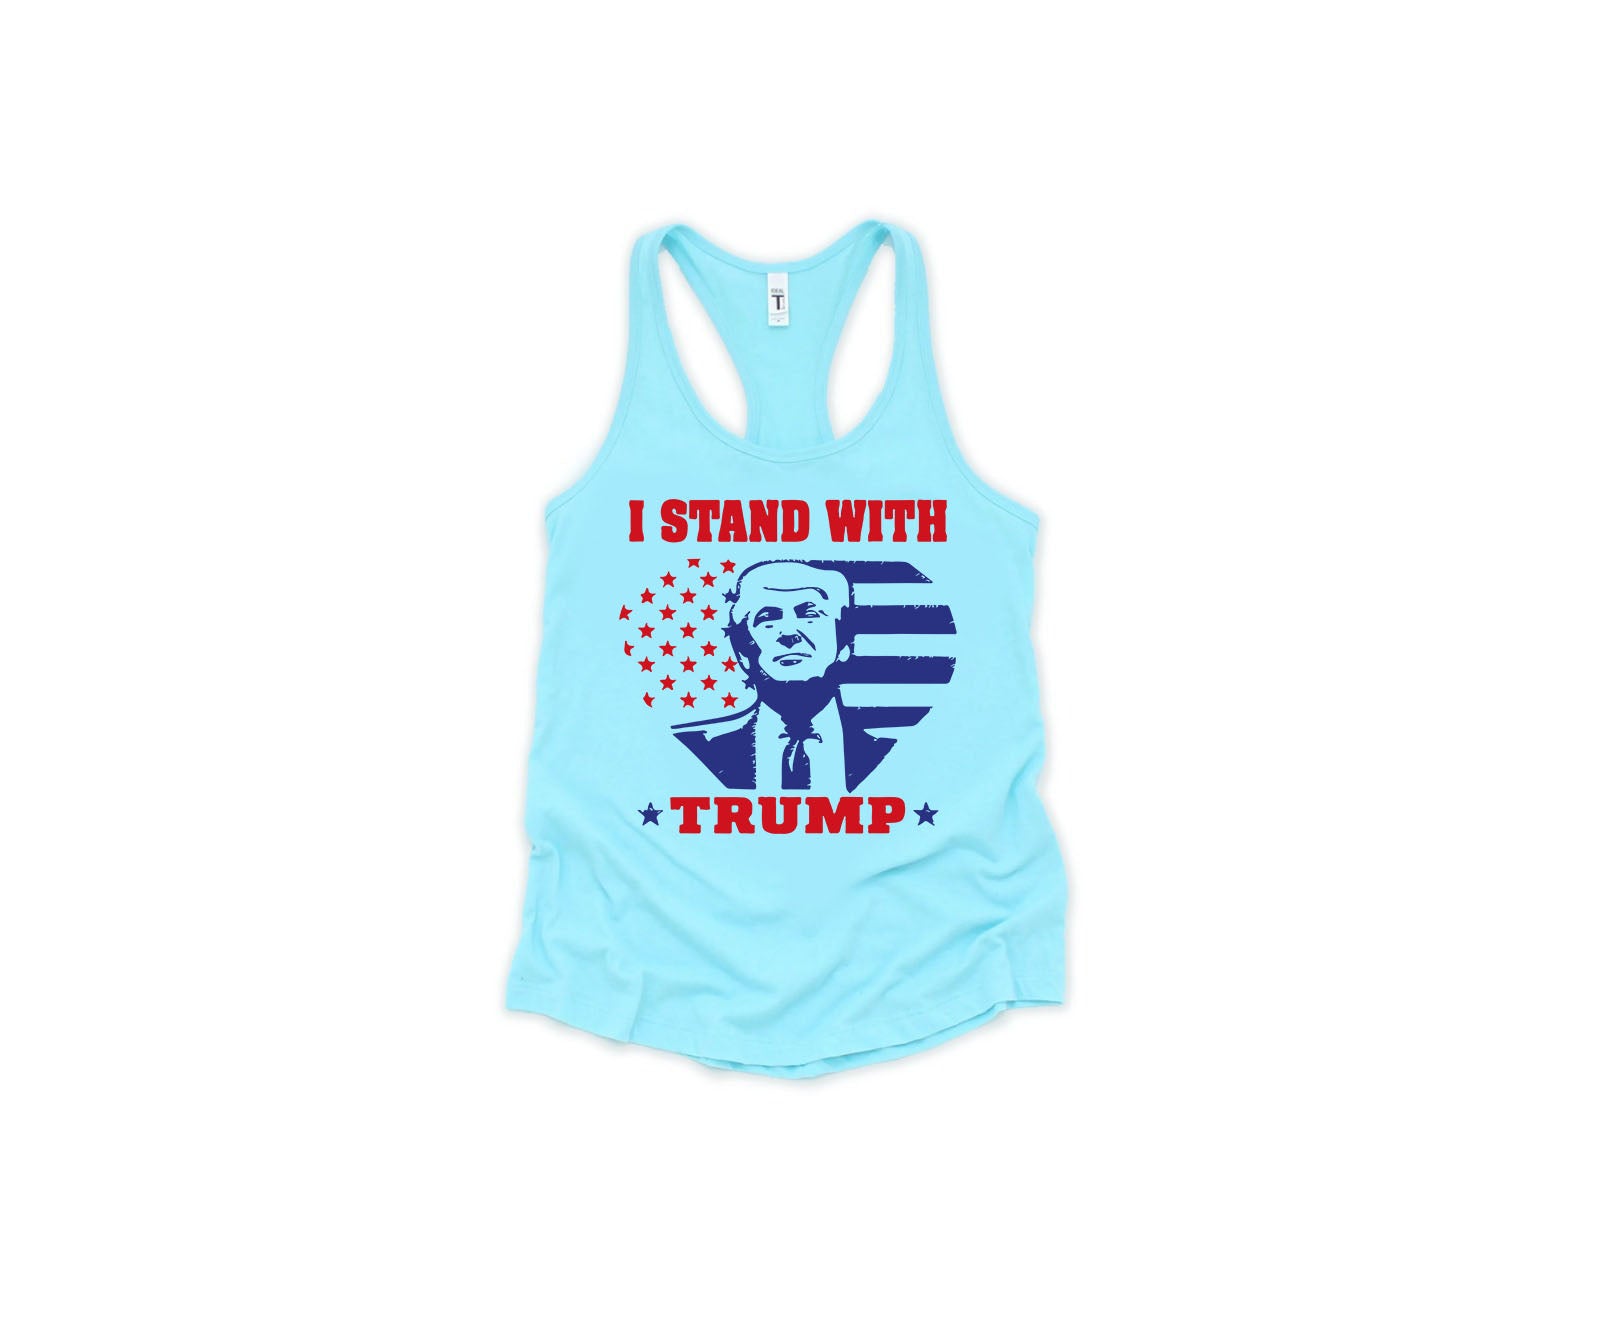 I Stand with Trump Shirt, Political Shirt, Trump Shirt-newamarketing